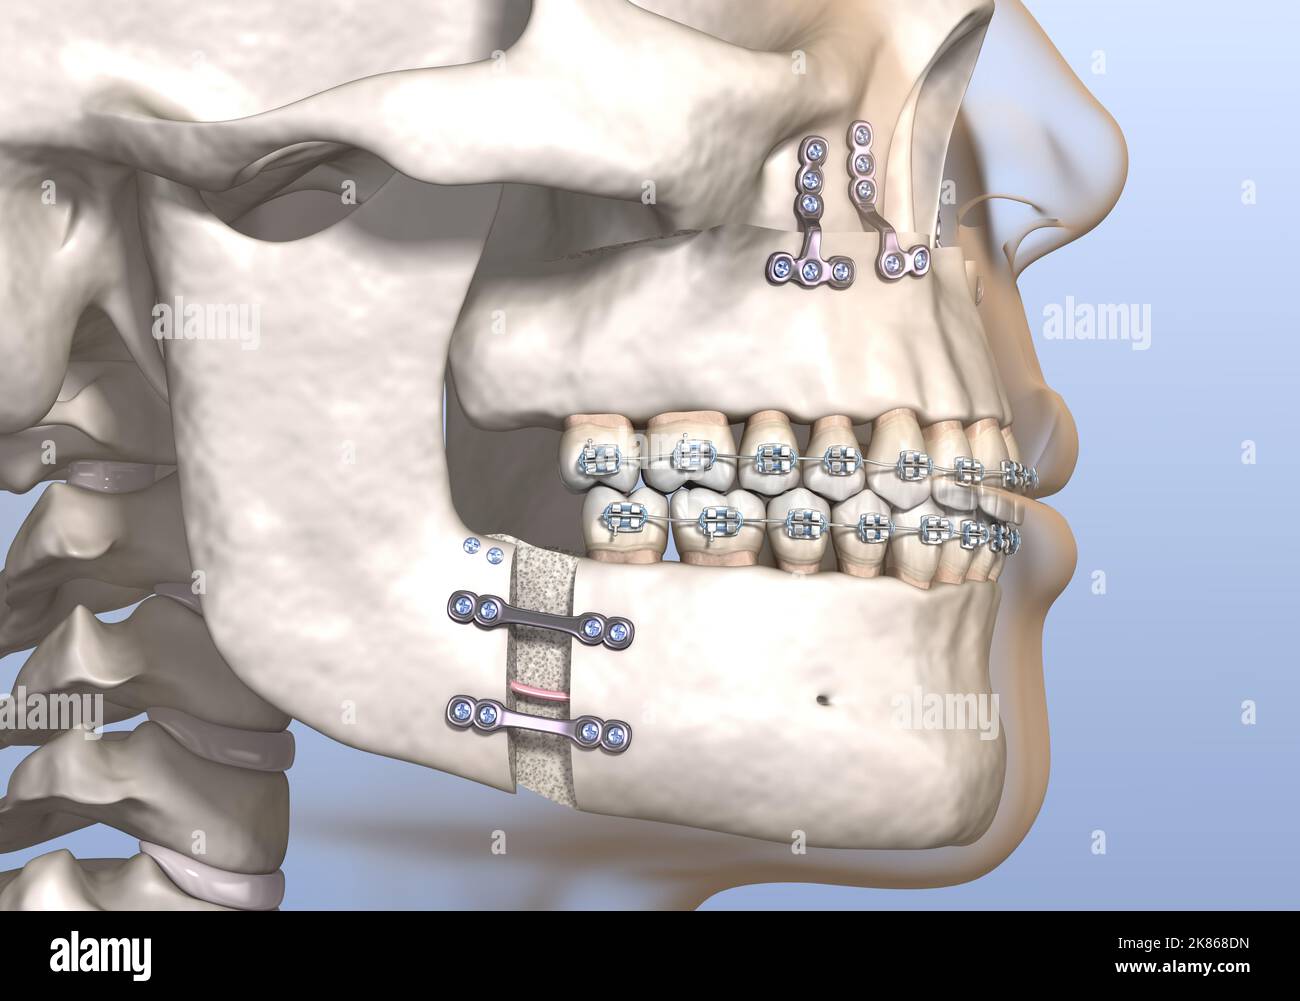 Cirugía de avance maxilomandibular. Ilustración 3D dental con precisión médica. Foto de stock